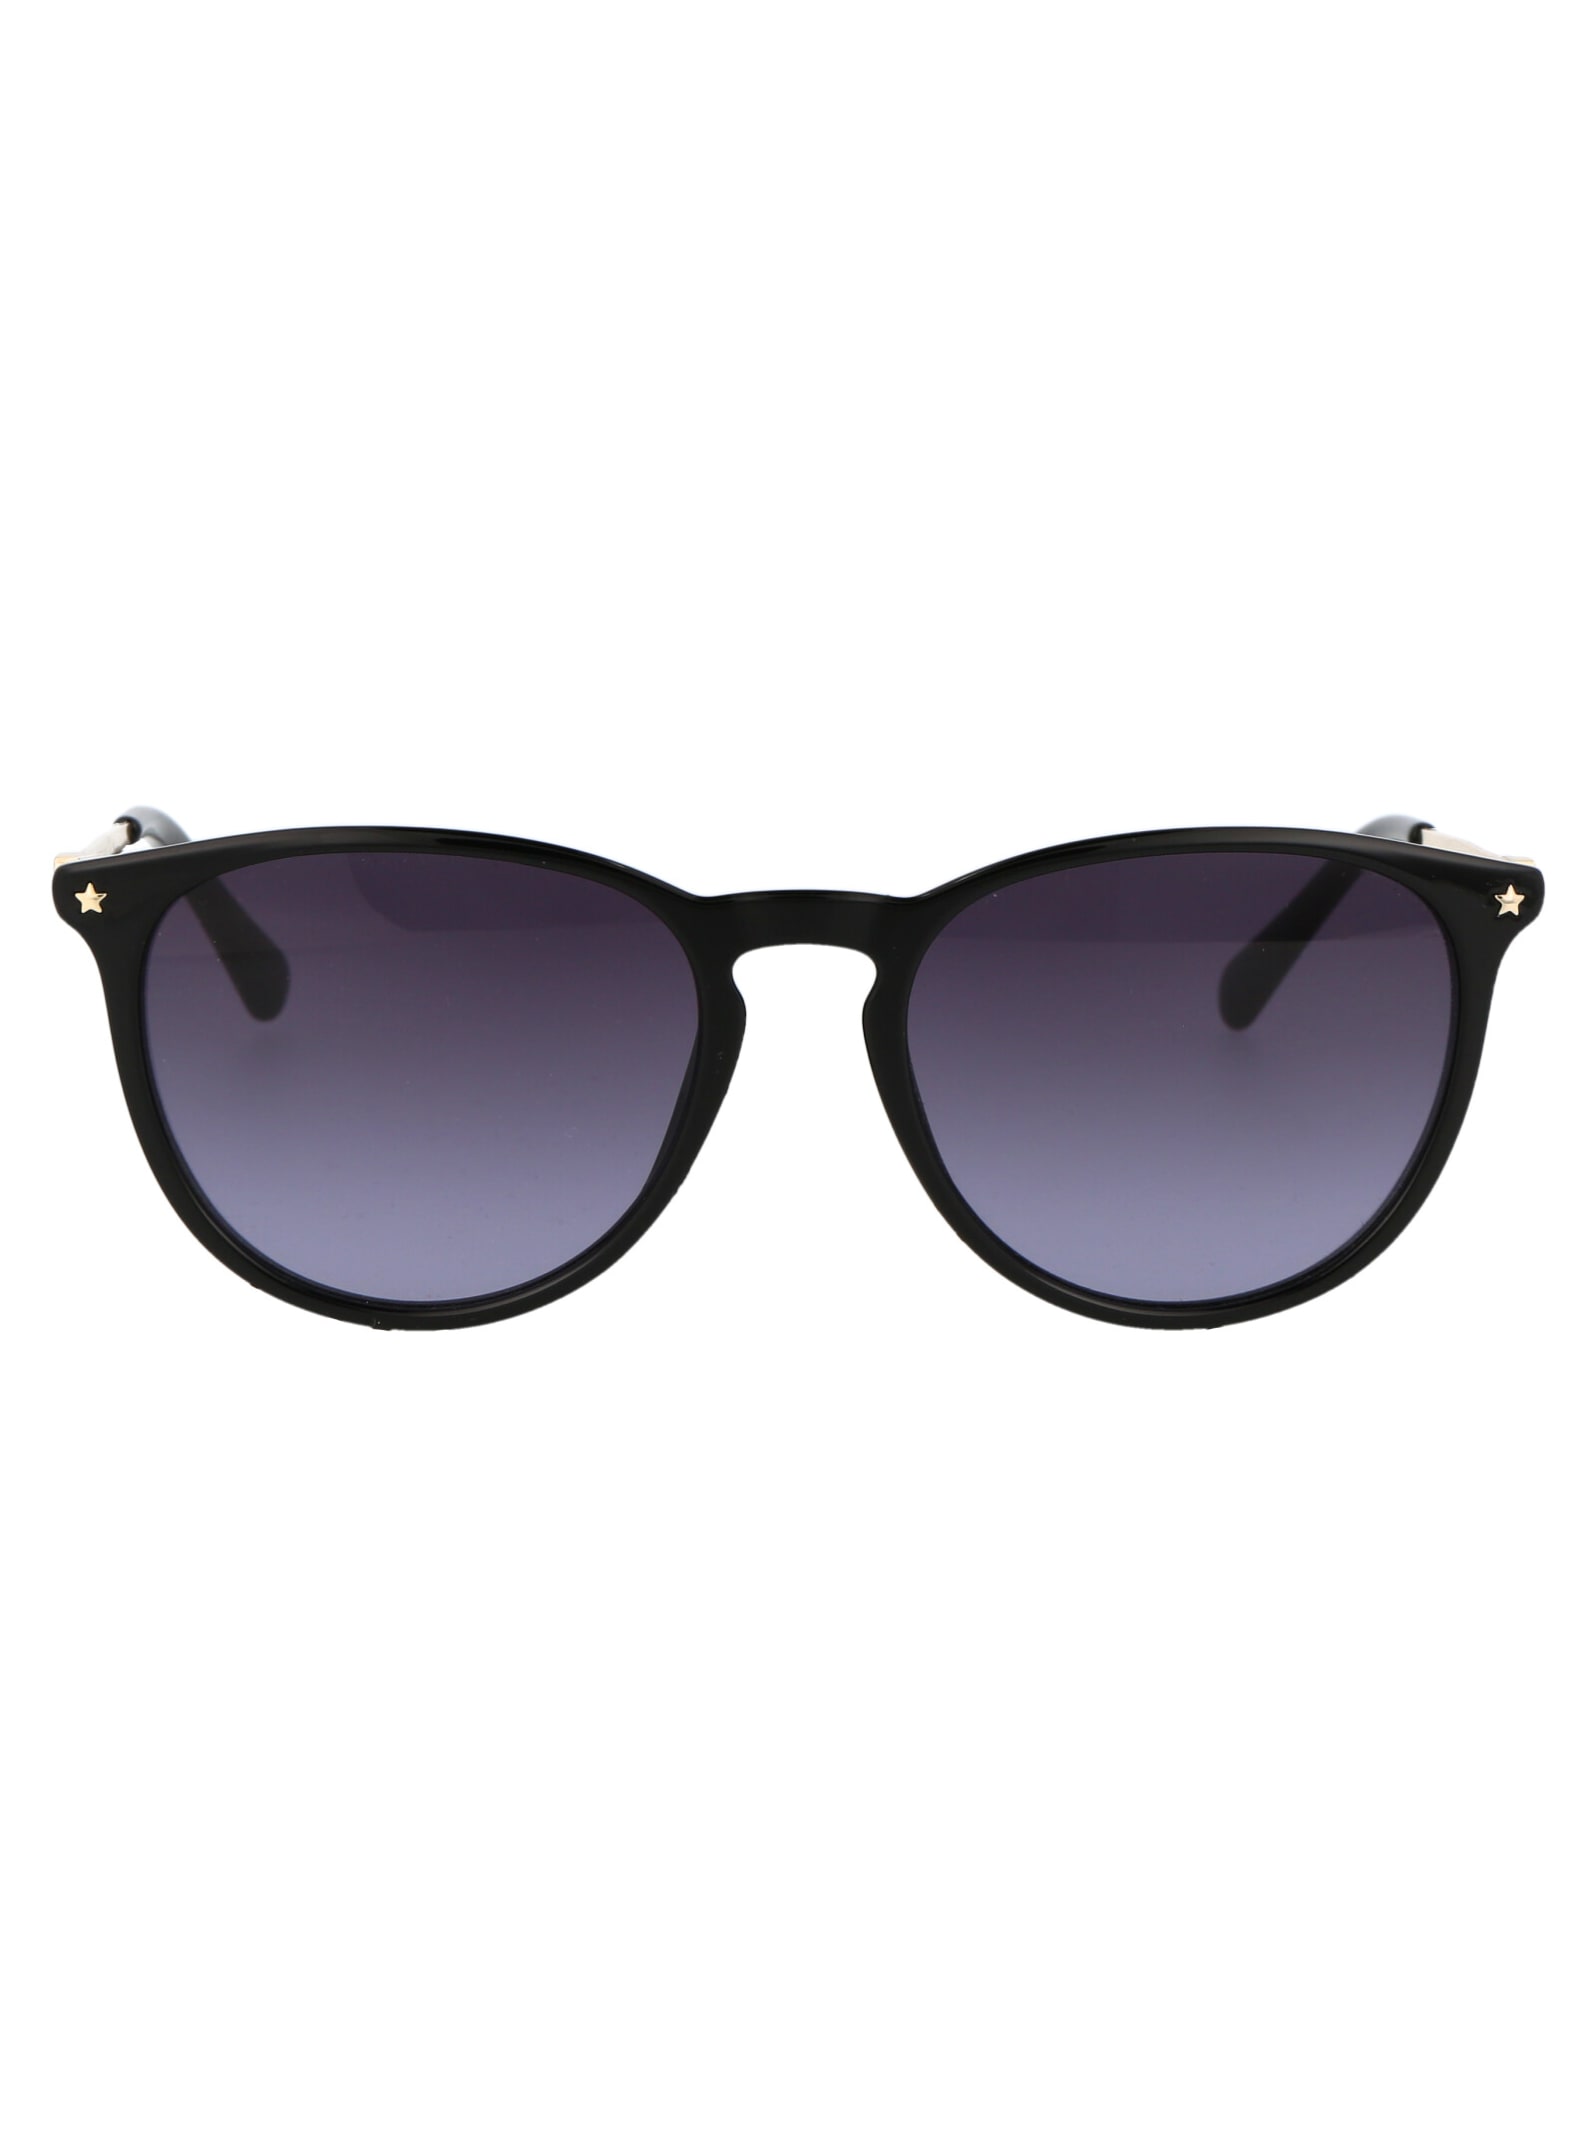 Cf 1005/s Sunglasses